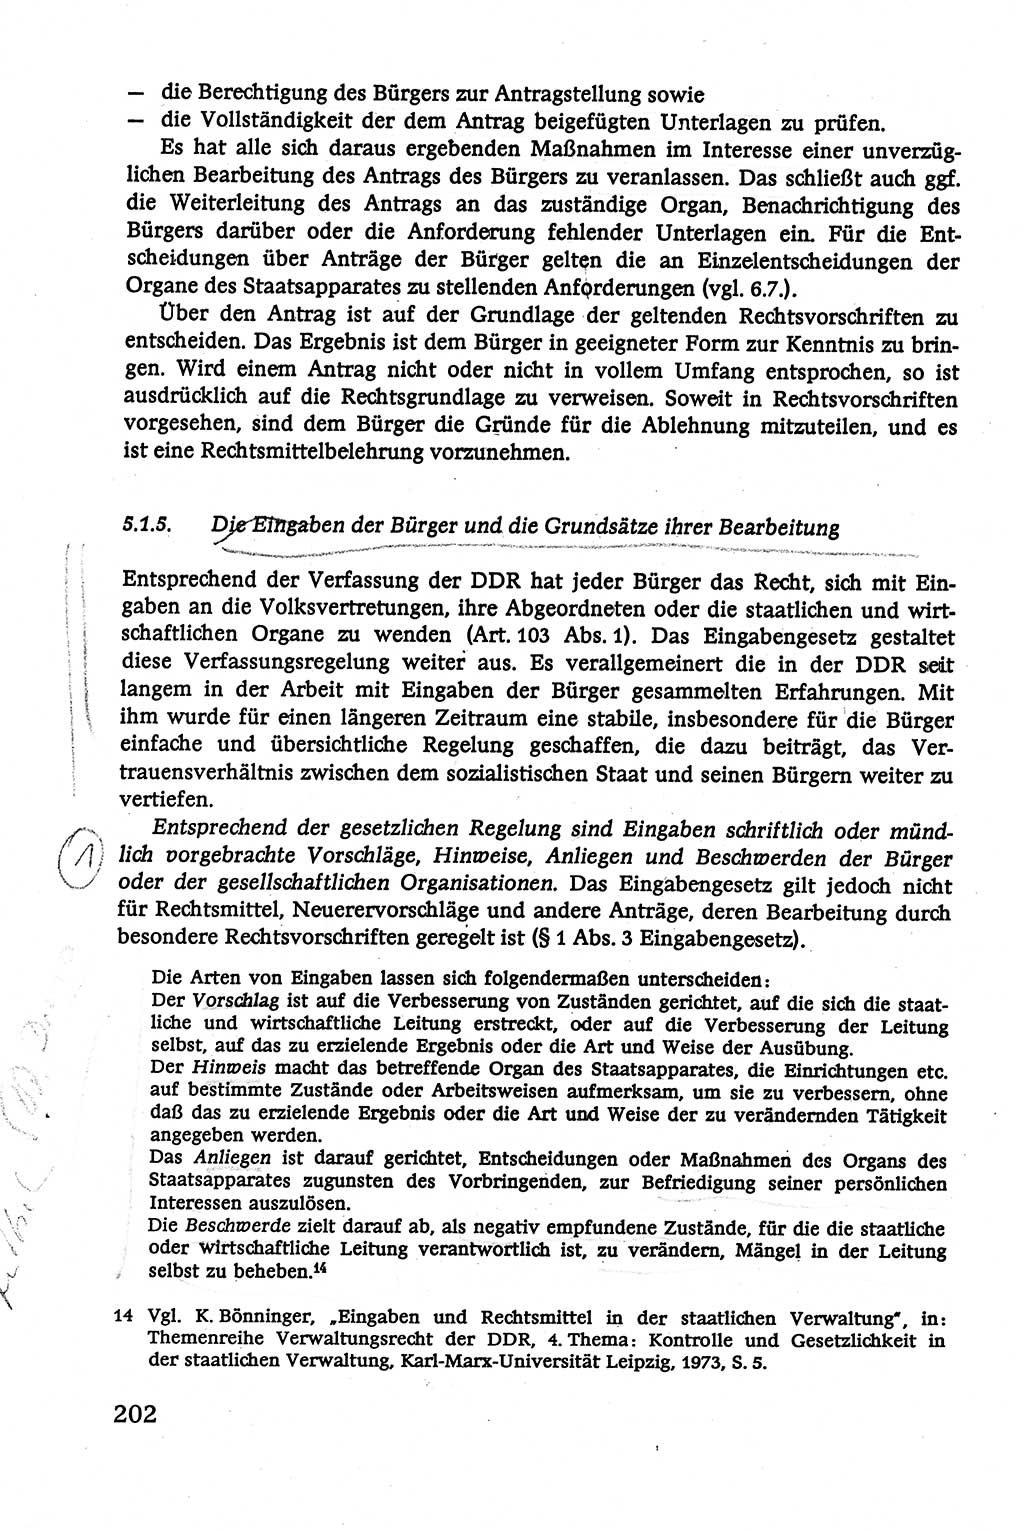 Verwaltungsrecht [Deutsche Demokratische Republik (DDR)], Lehrbuch 1979, Seite 202 (Verw.-R. DDR Lb. 1979, S. 202)